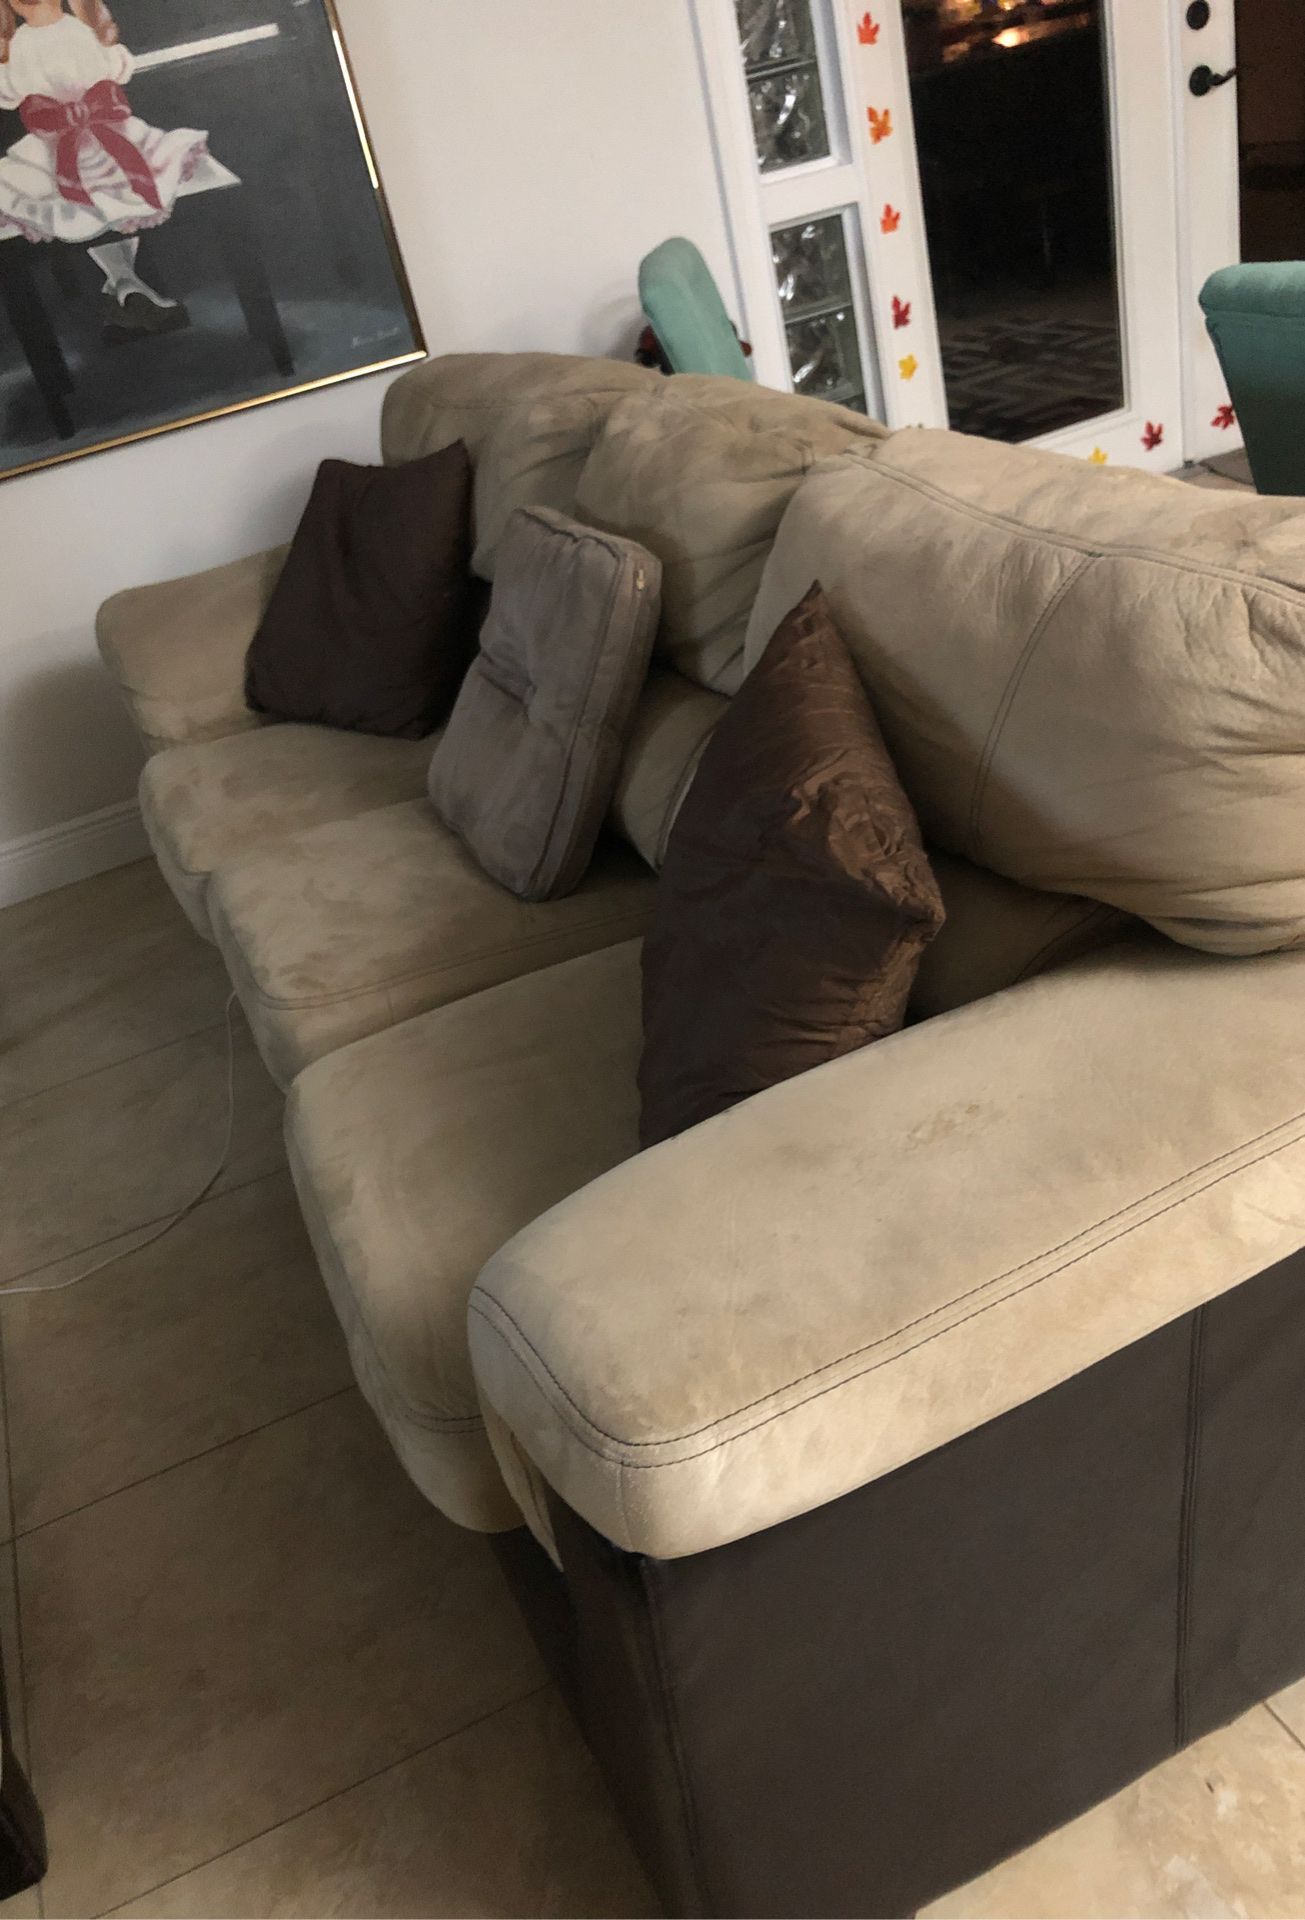 Comfortable sofa